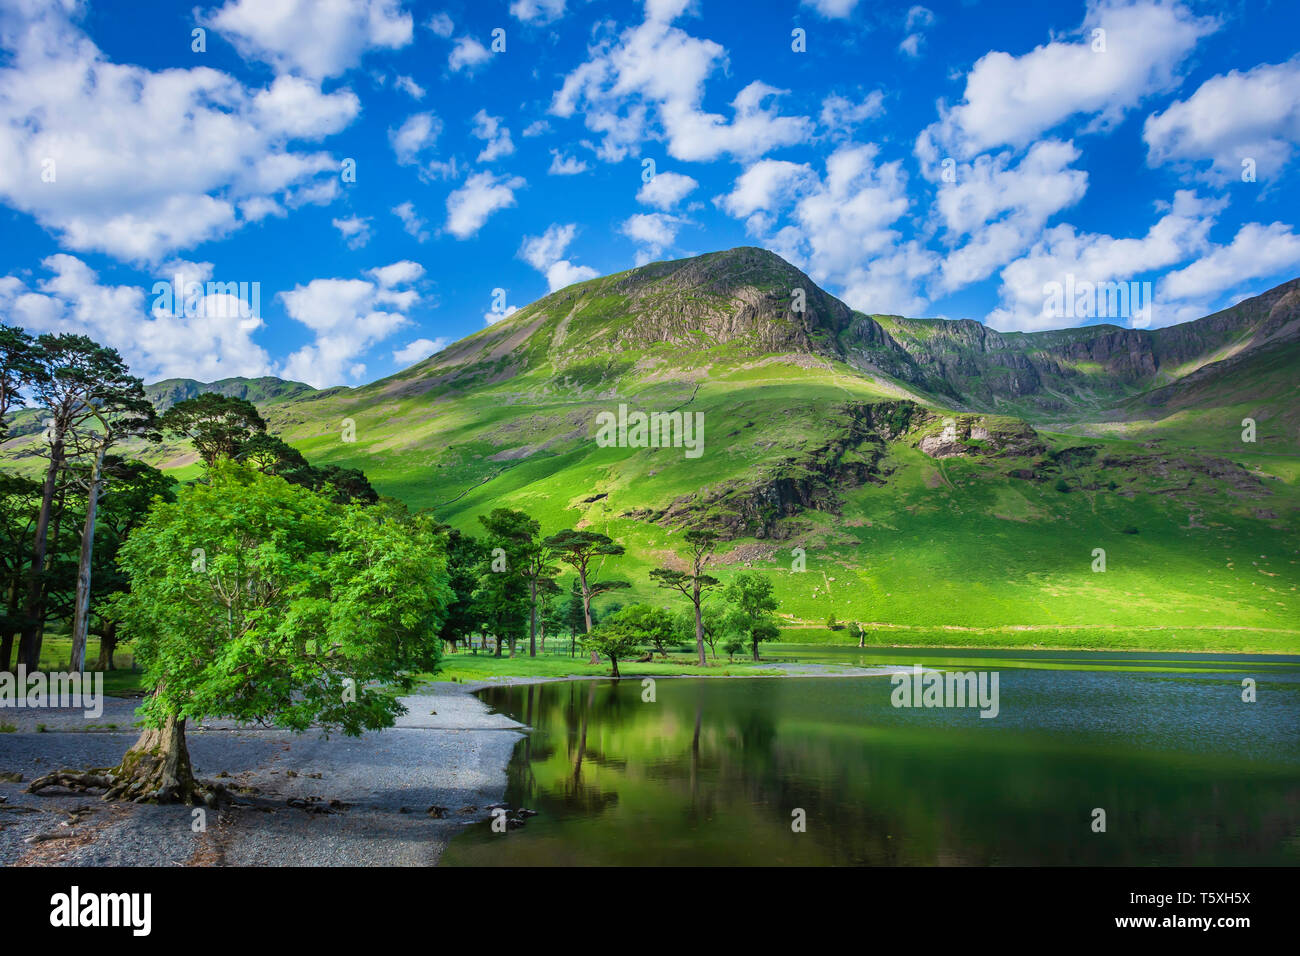 Uno splendido scenario di Lake District inglese in primavera.tree crescono su lakeshore, picco di montagna con verdi pendii e cielo blu con nuvole sopra. Foto Stock